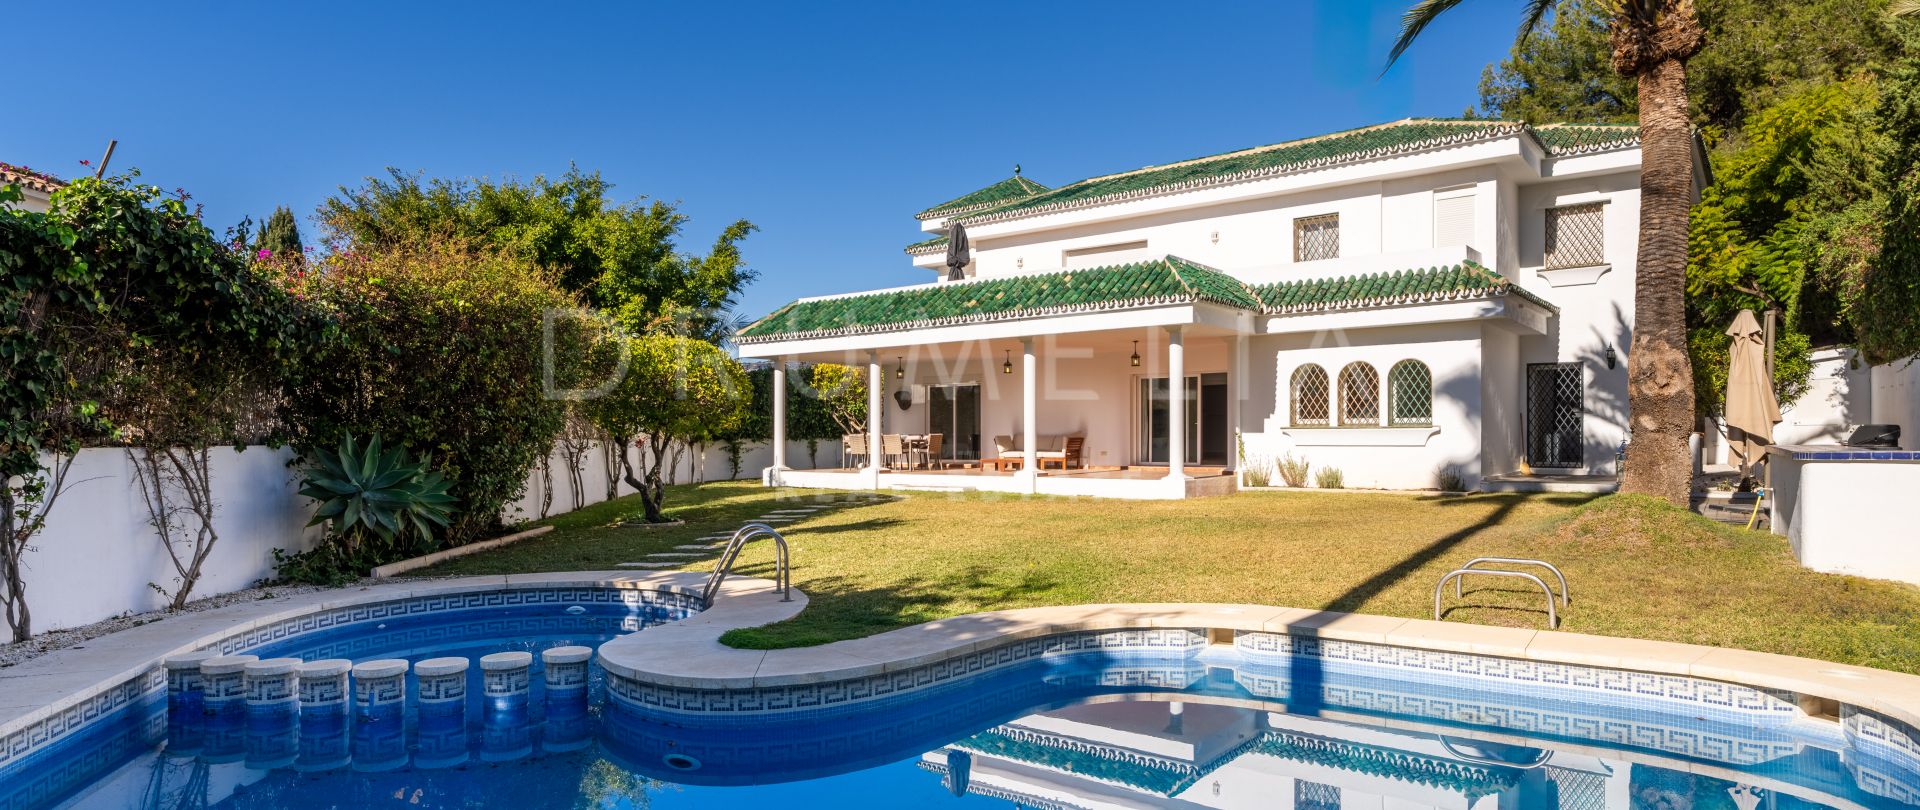 Tradicional villa mediterránea con piscina privada en una ubicación privilegiada, Nueva Andalucía